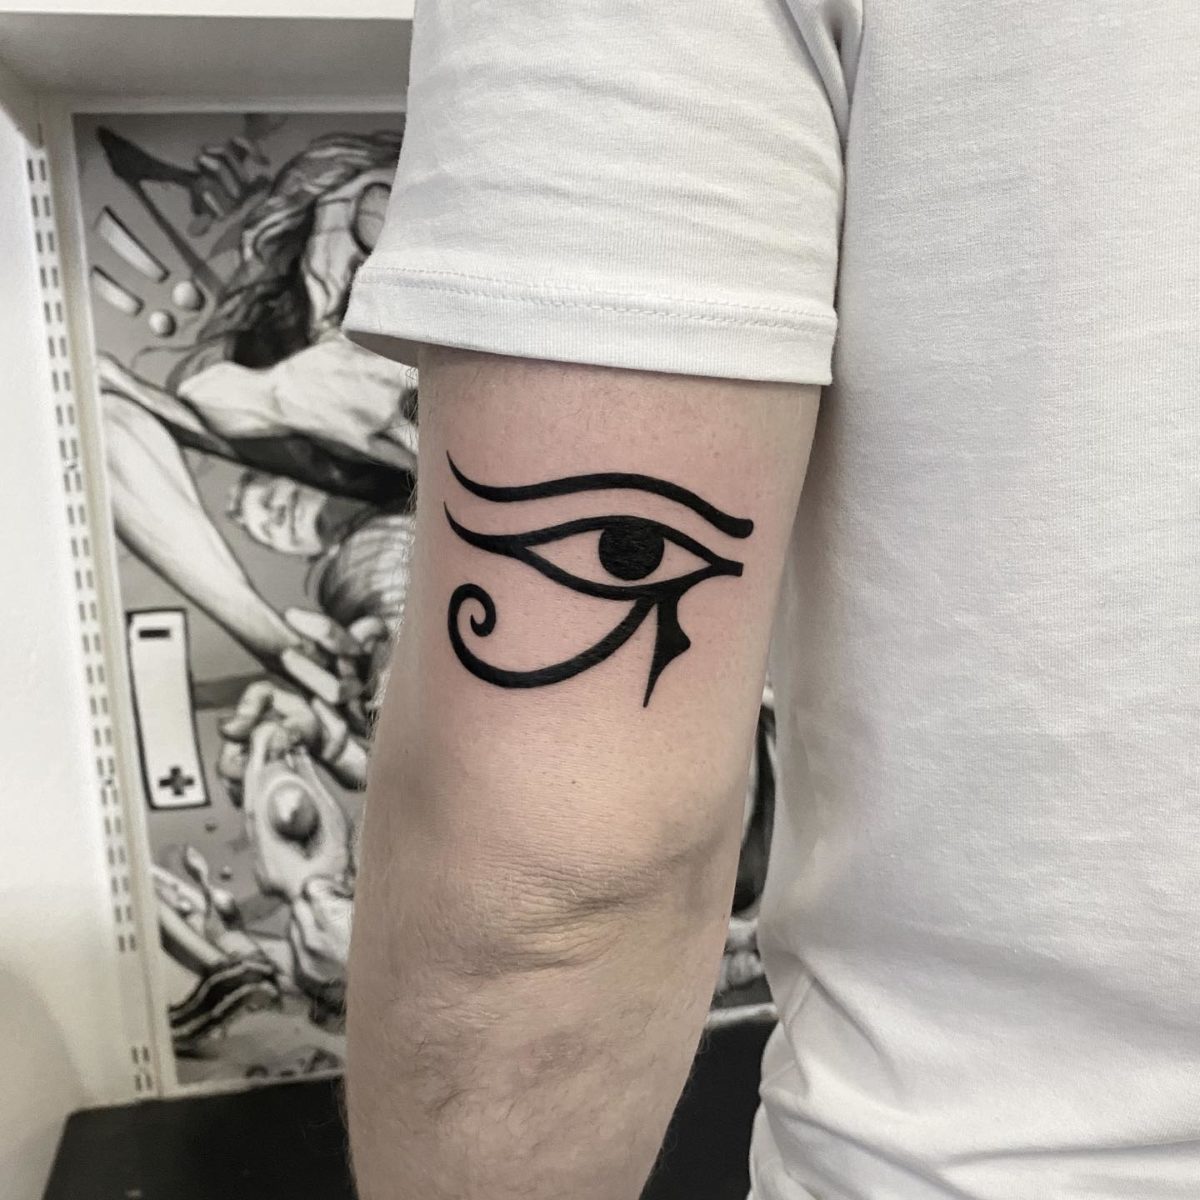 eye of horus tattoo ideas